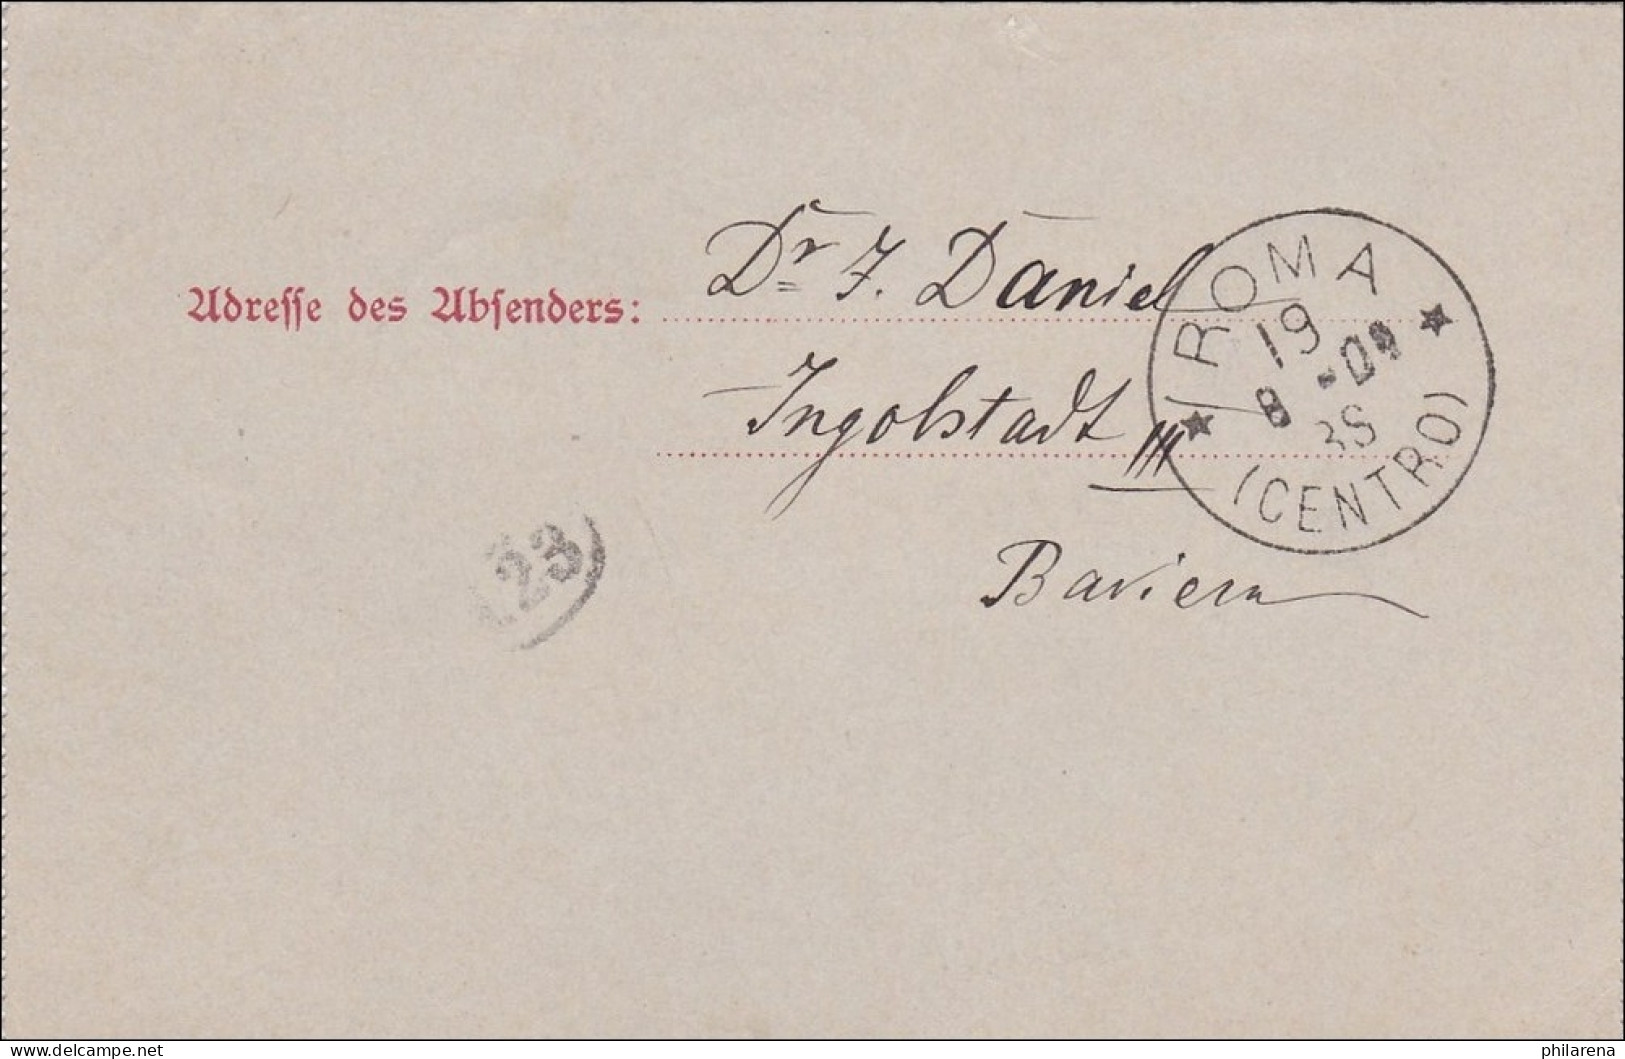 Bayern: 1904: Kartenbrief Von Ingoldstadt Nach Roma - Postal  Stationery